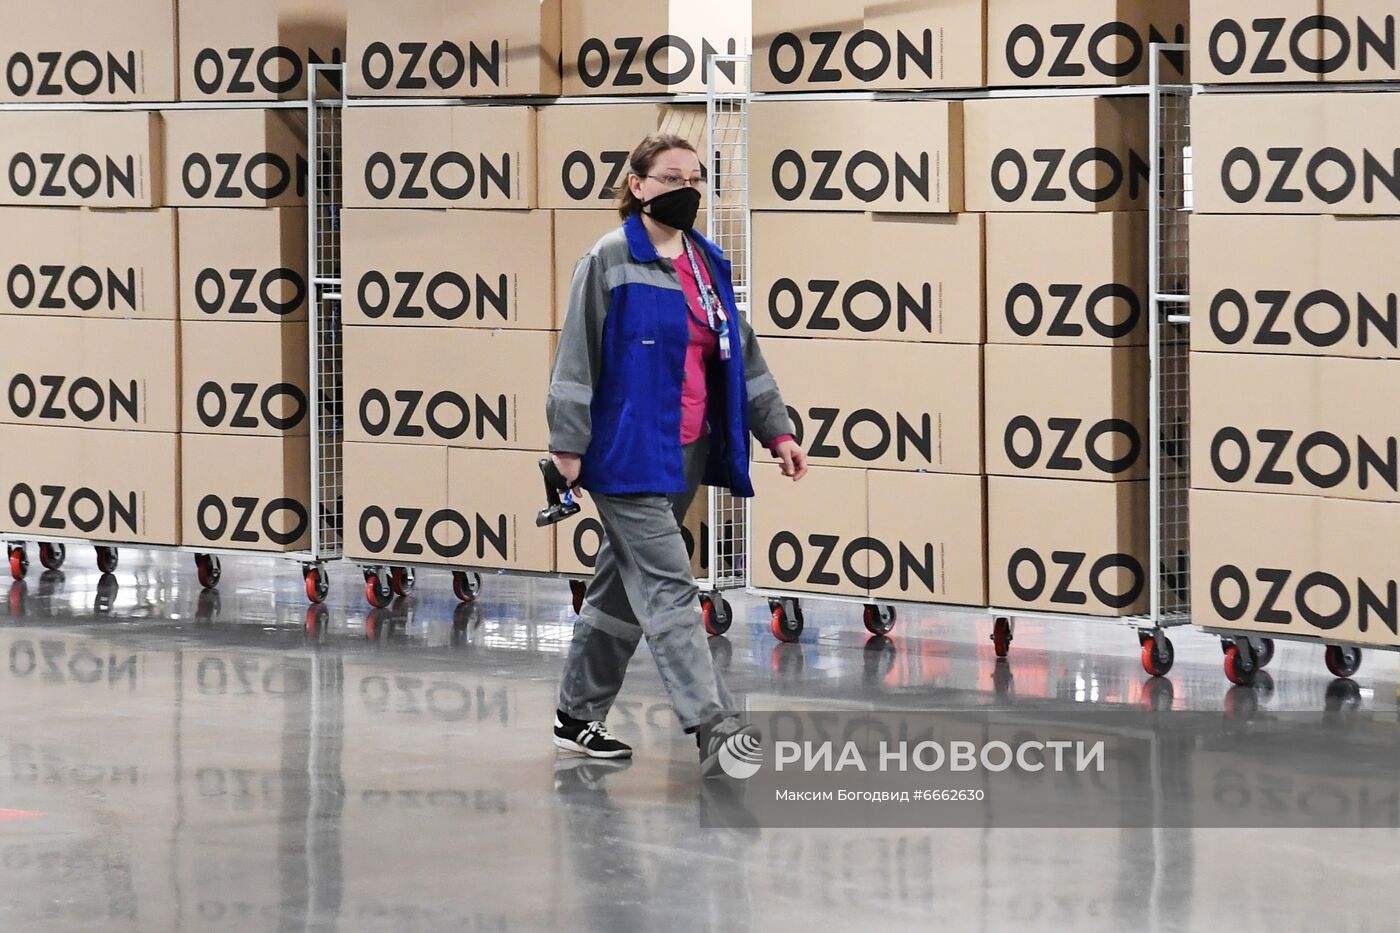 Открытие логистического центра интернет-магазина Ozon в Казани